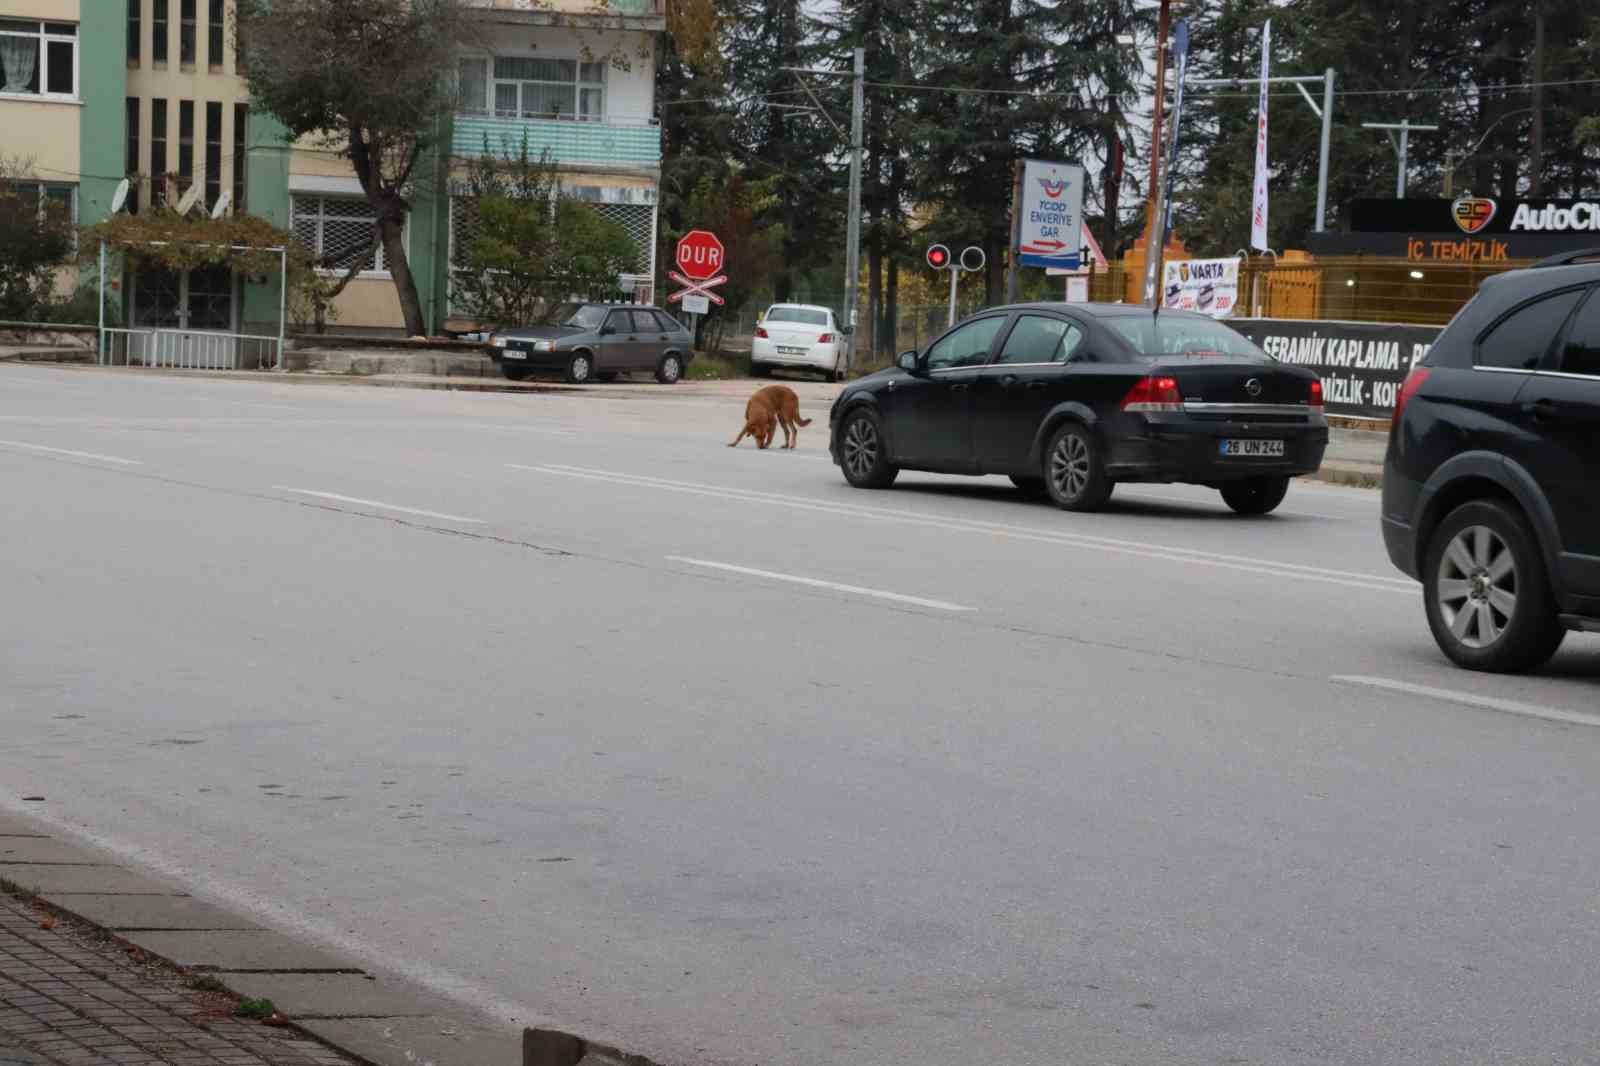 yol ortasında bekleyen köpek sürücülere zor anlar yaşattı